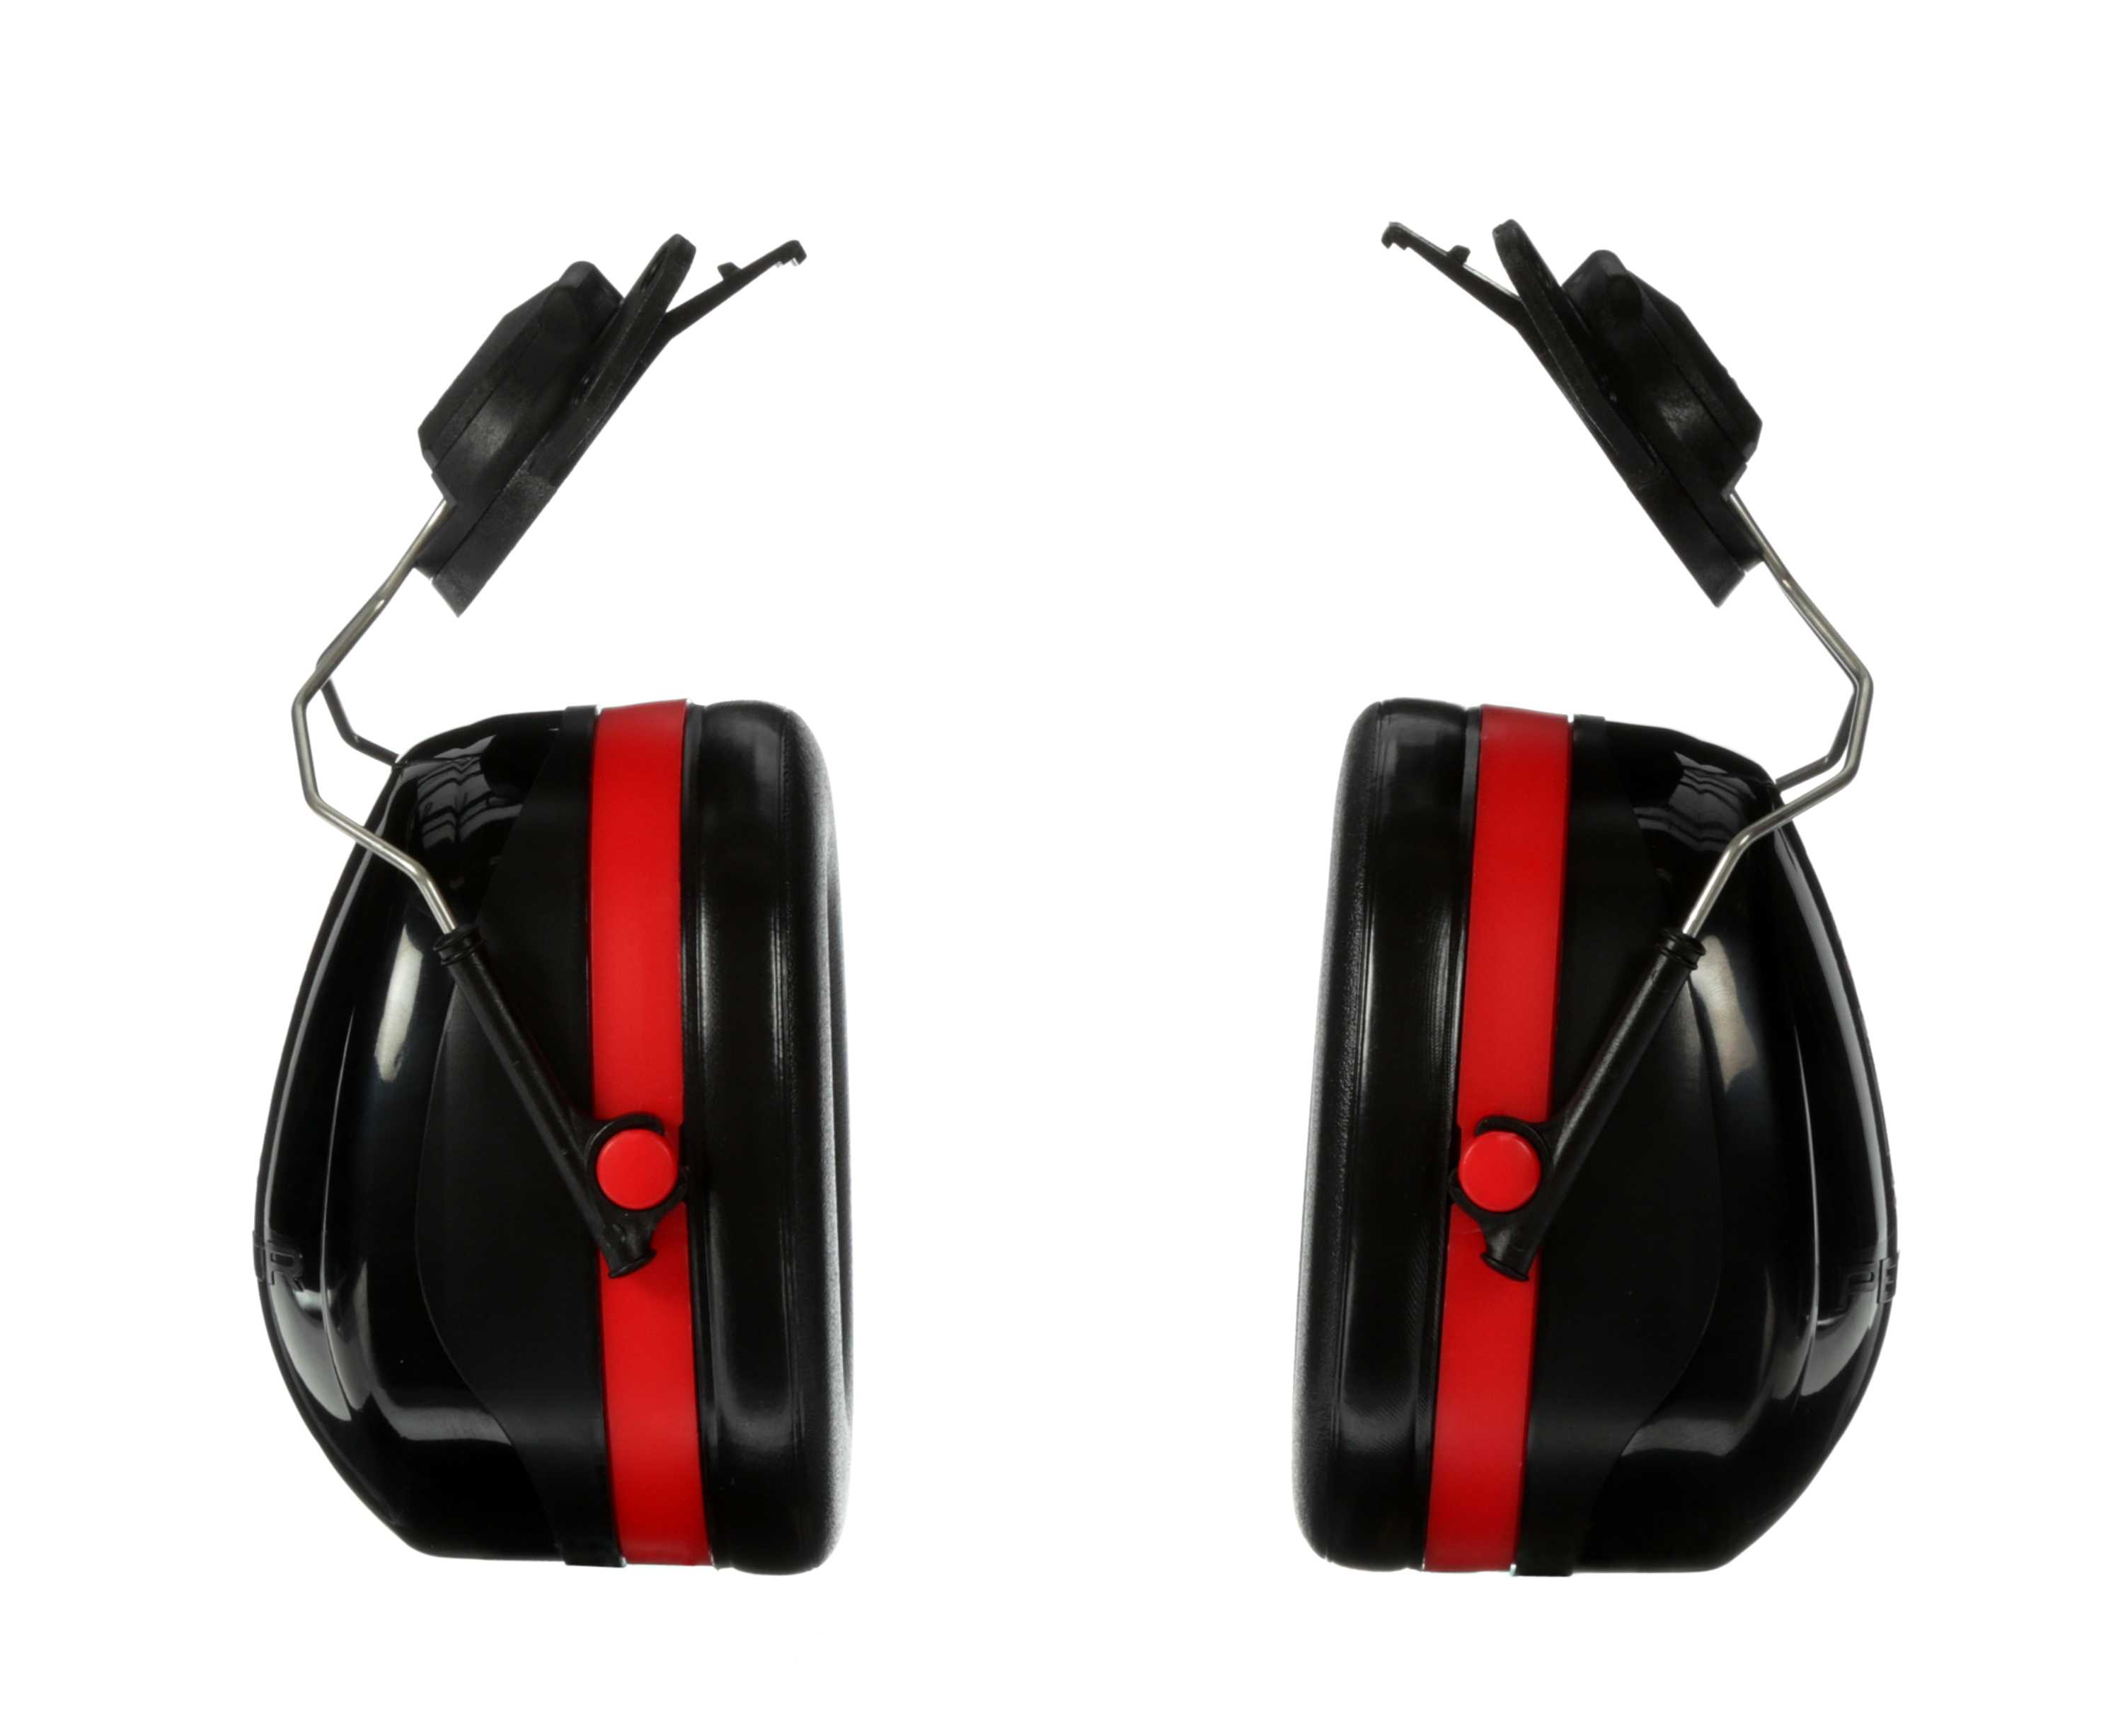 Protector auditivo adaptable a casco H10P3E (3M)